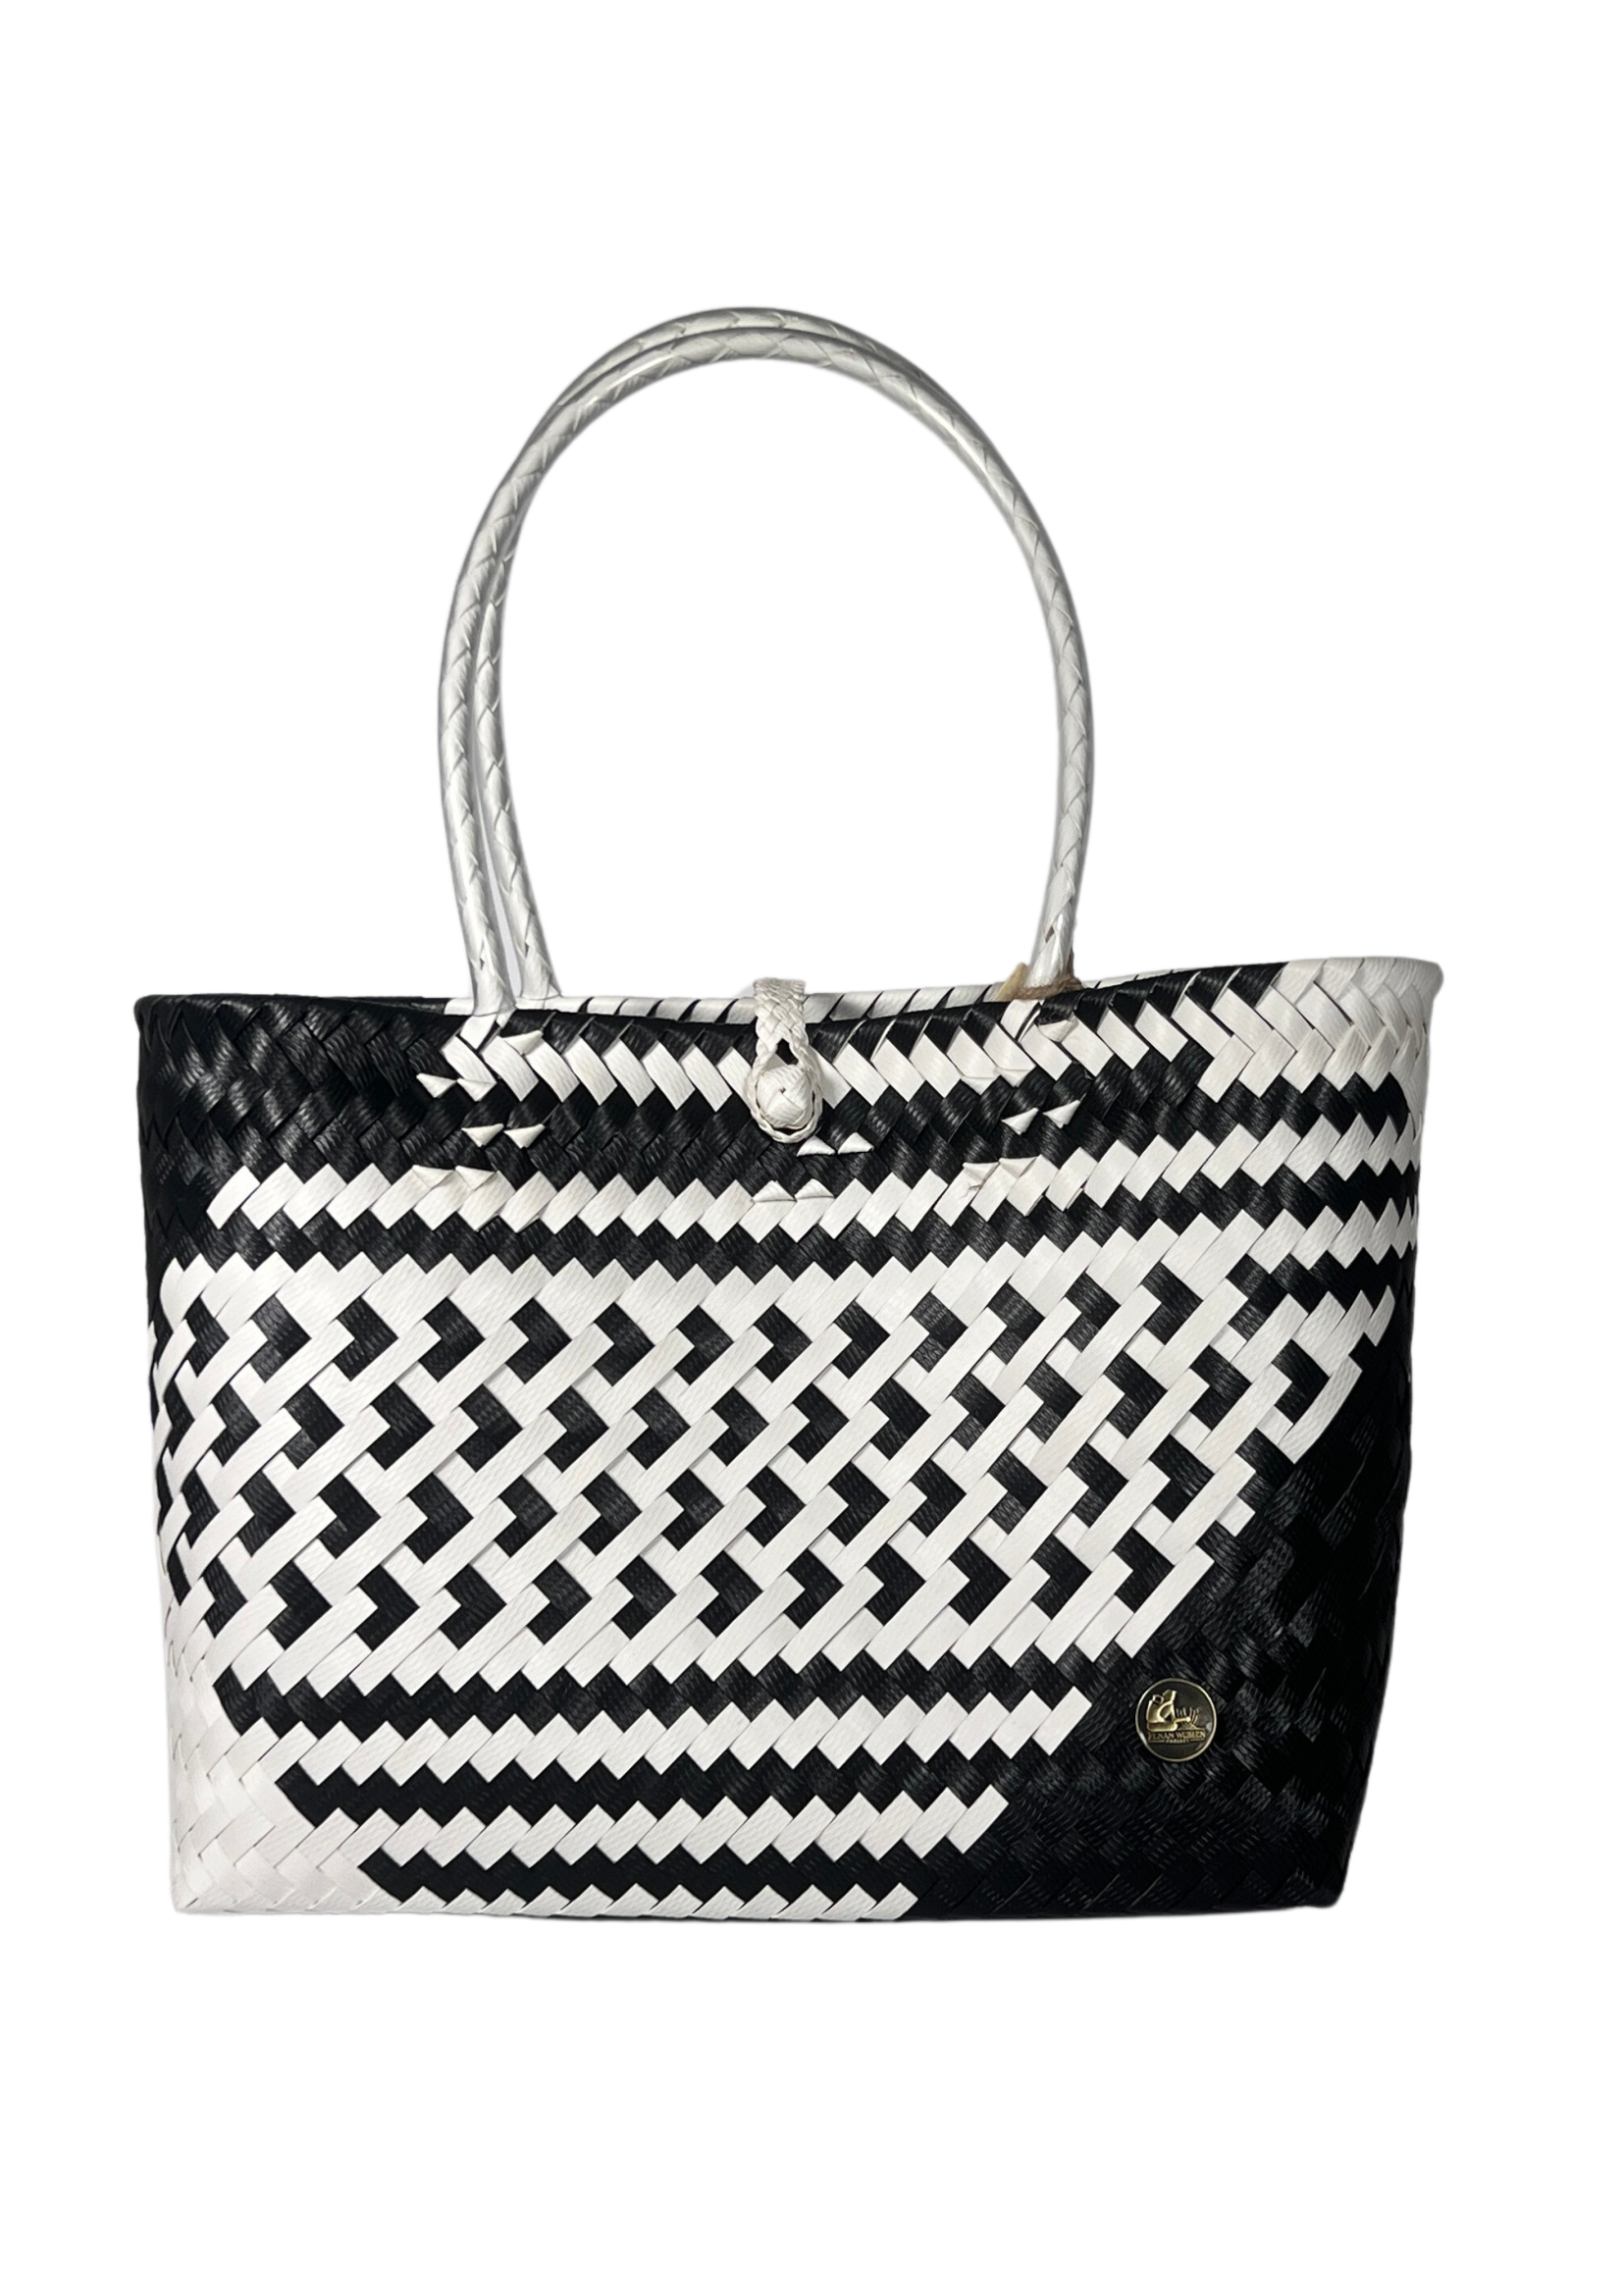 Black & White Patterned Bag